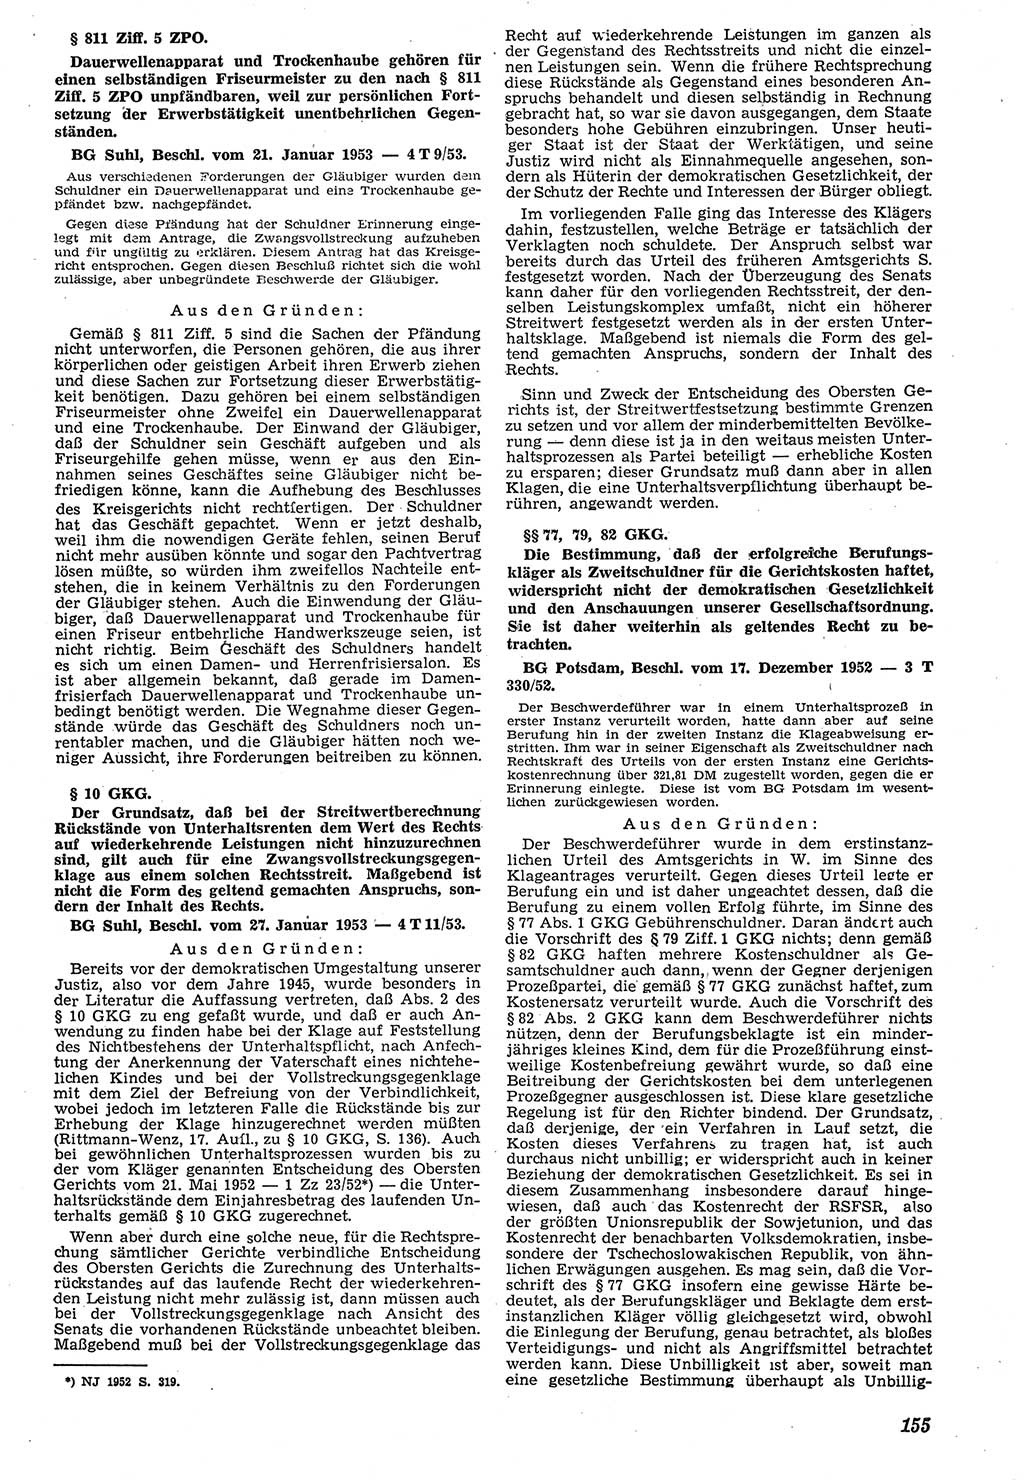 Neue Justiz (NJ), Zeitschrift für Recht und Rechtswissenschaft [Deutsche Demokratische Republik (DDR)], 7. Jahrgang 1953, Seite 155 (NJ DDR 1953, S. 155)